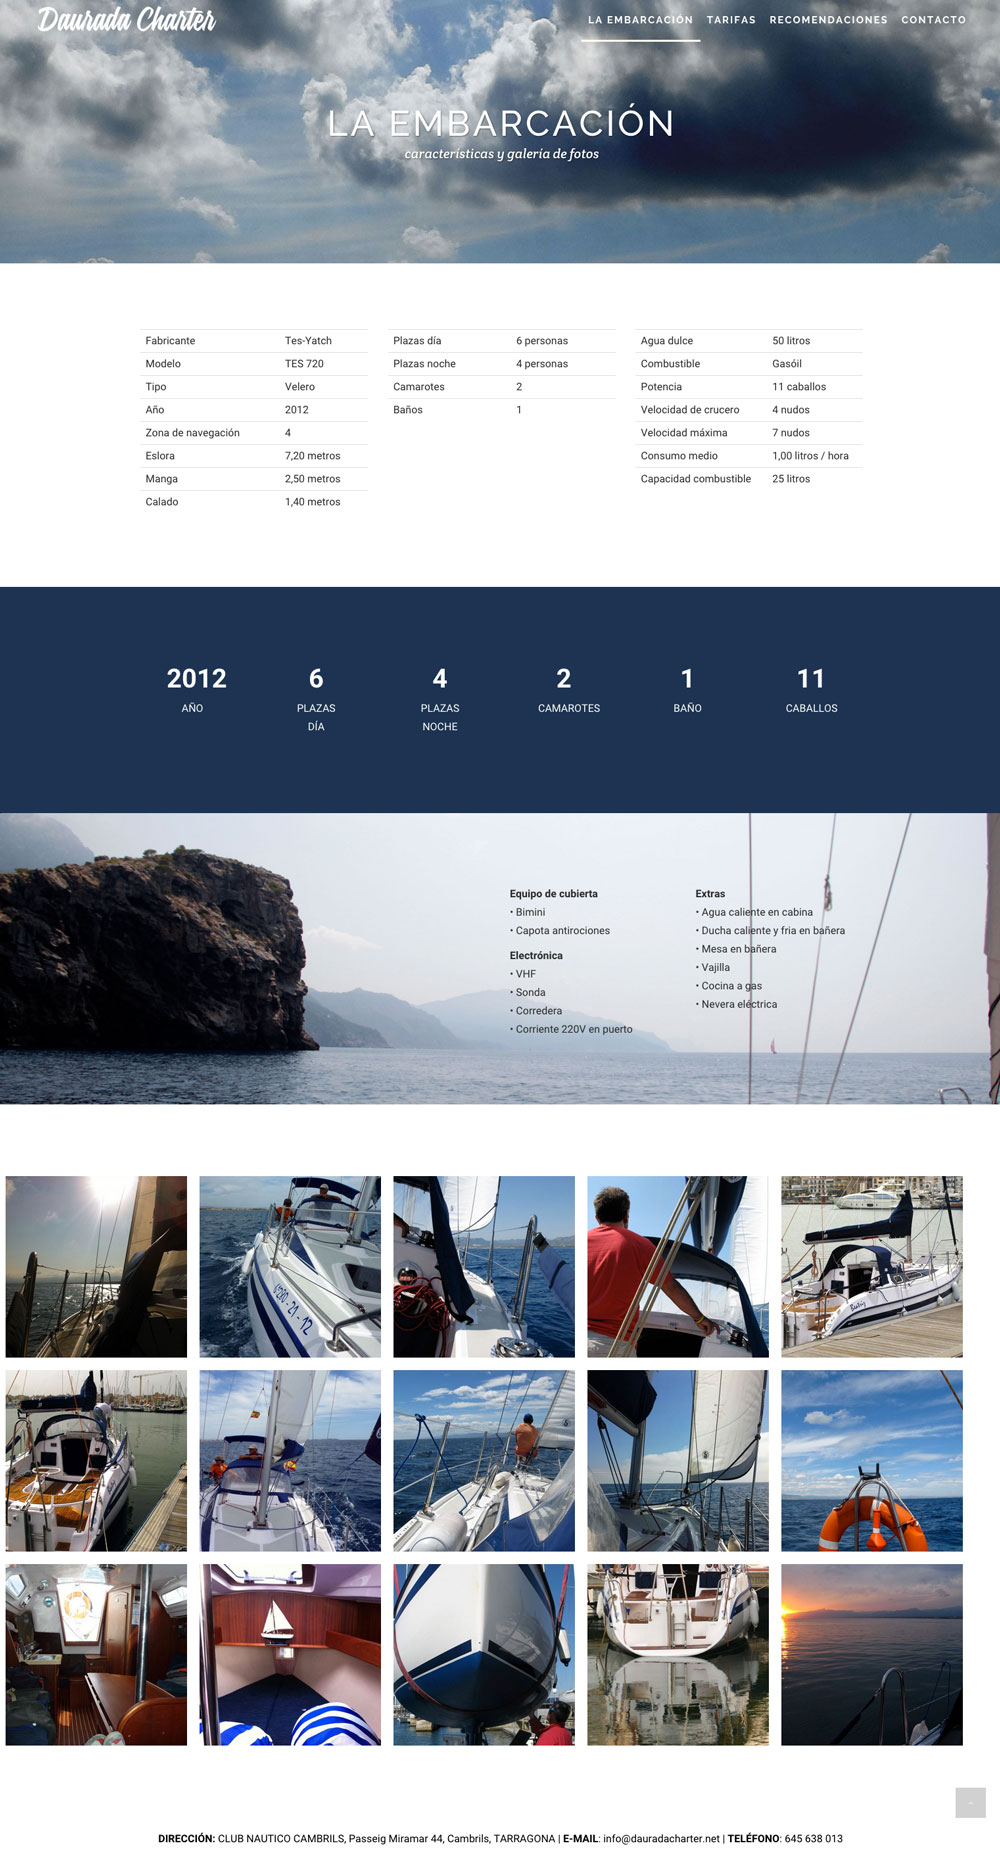 Daurada Charter - Alquiler de barco - Website